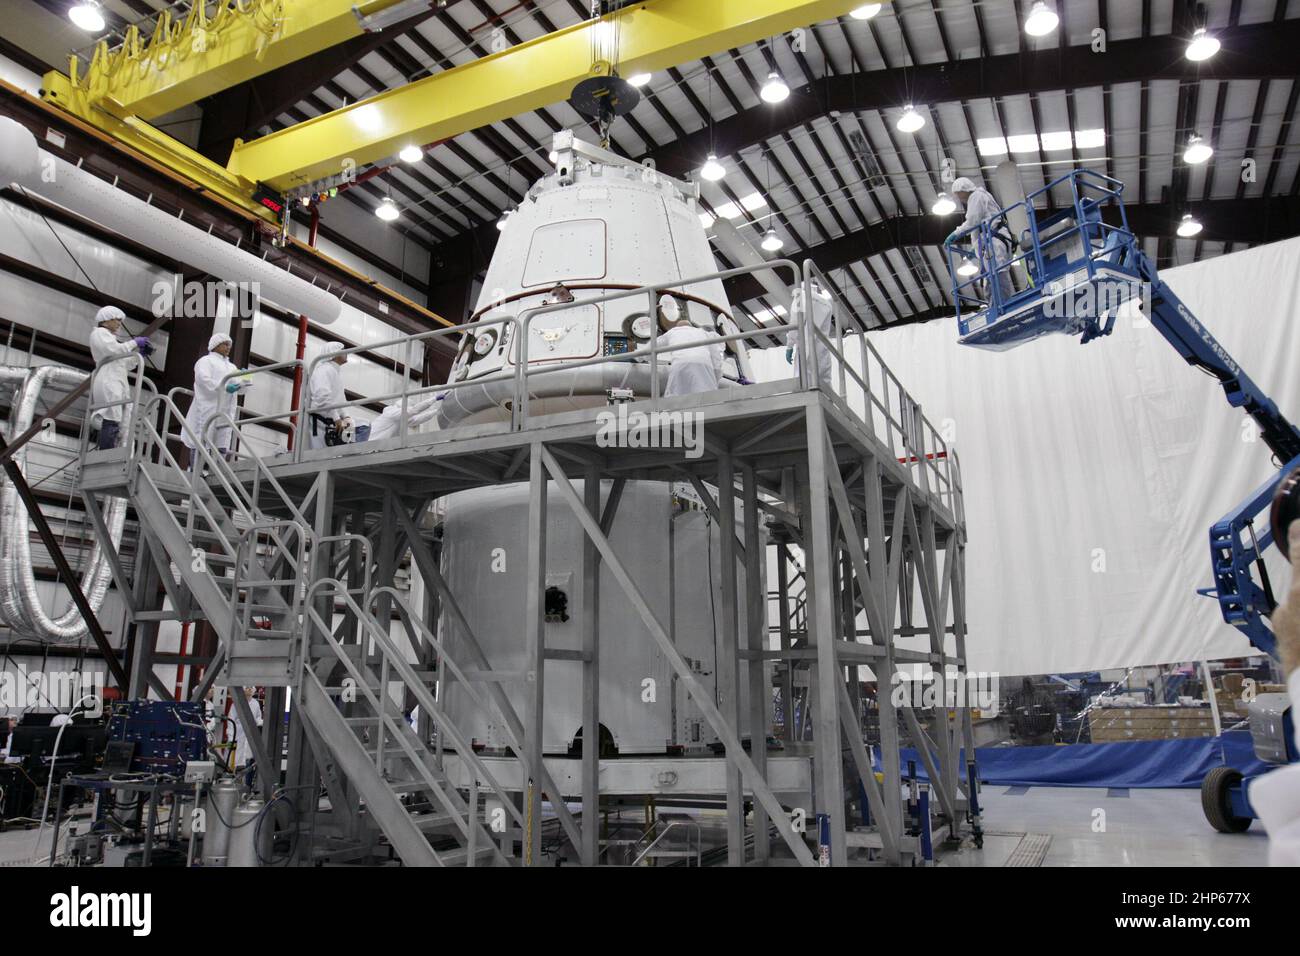 La cápsula del dragón de Space Exploration Technologies Corp. (SpaceX) se coloca encima de su anillo de carga dentro de un hangar de procesamiento en la estación de la fuerza aérea de Cabo Cañaveral en Florida ca. 2011 Foto de stock